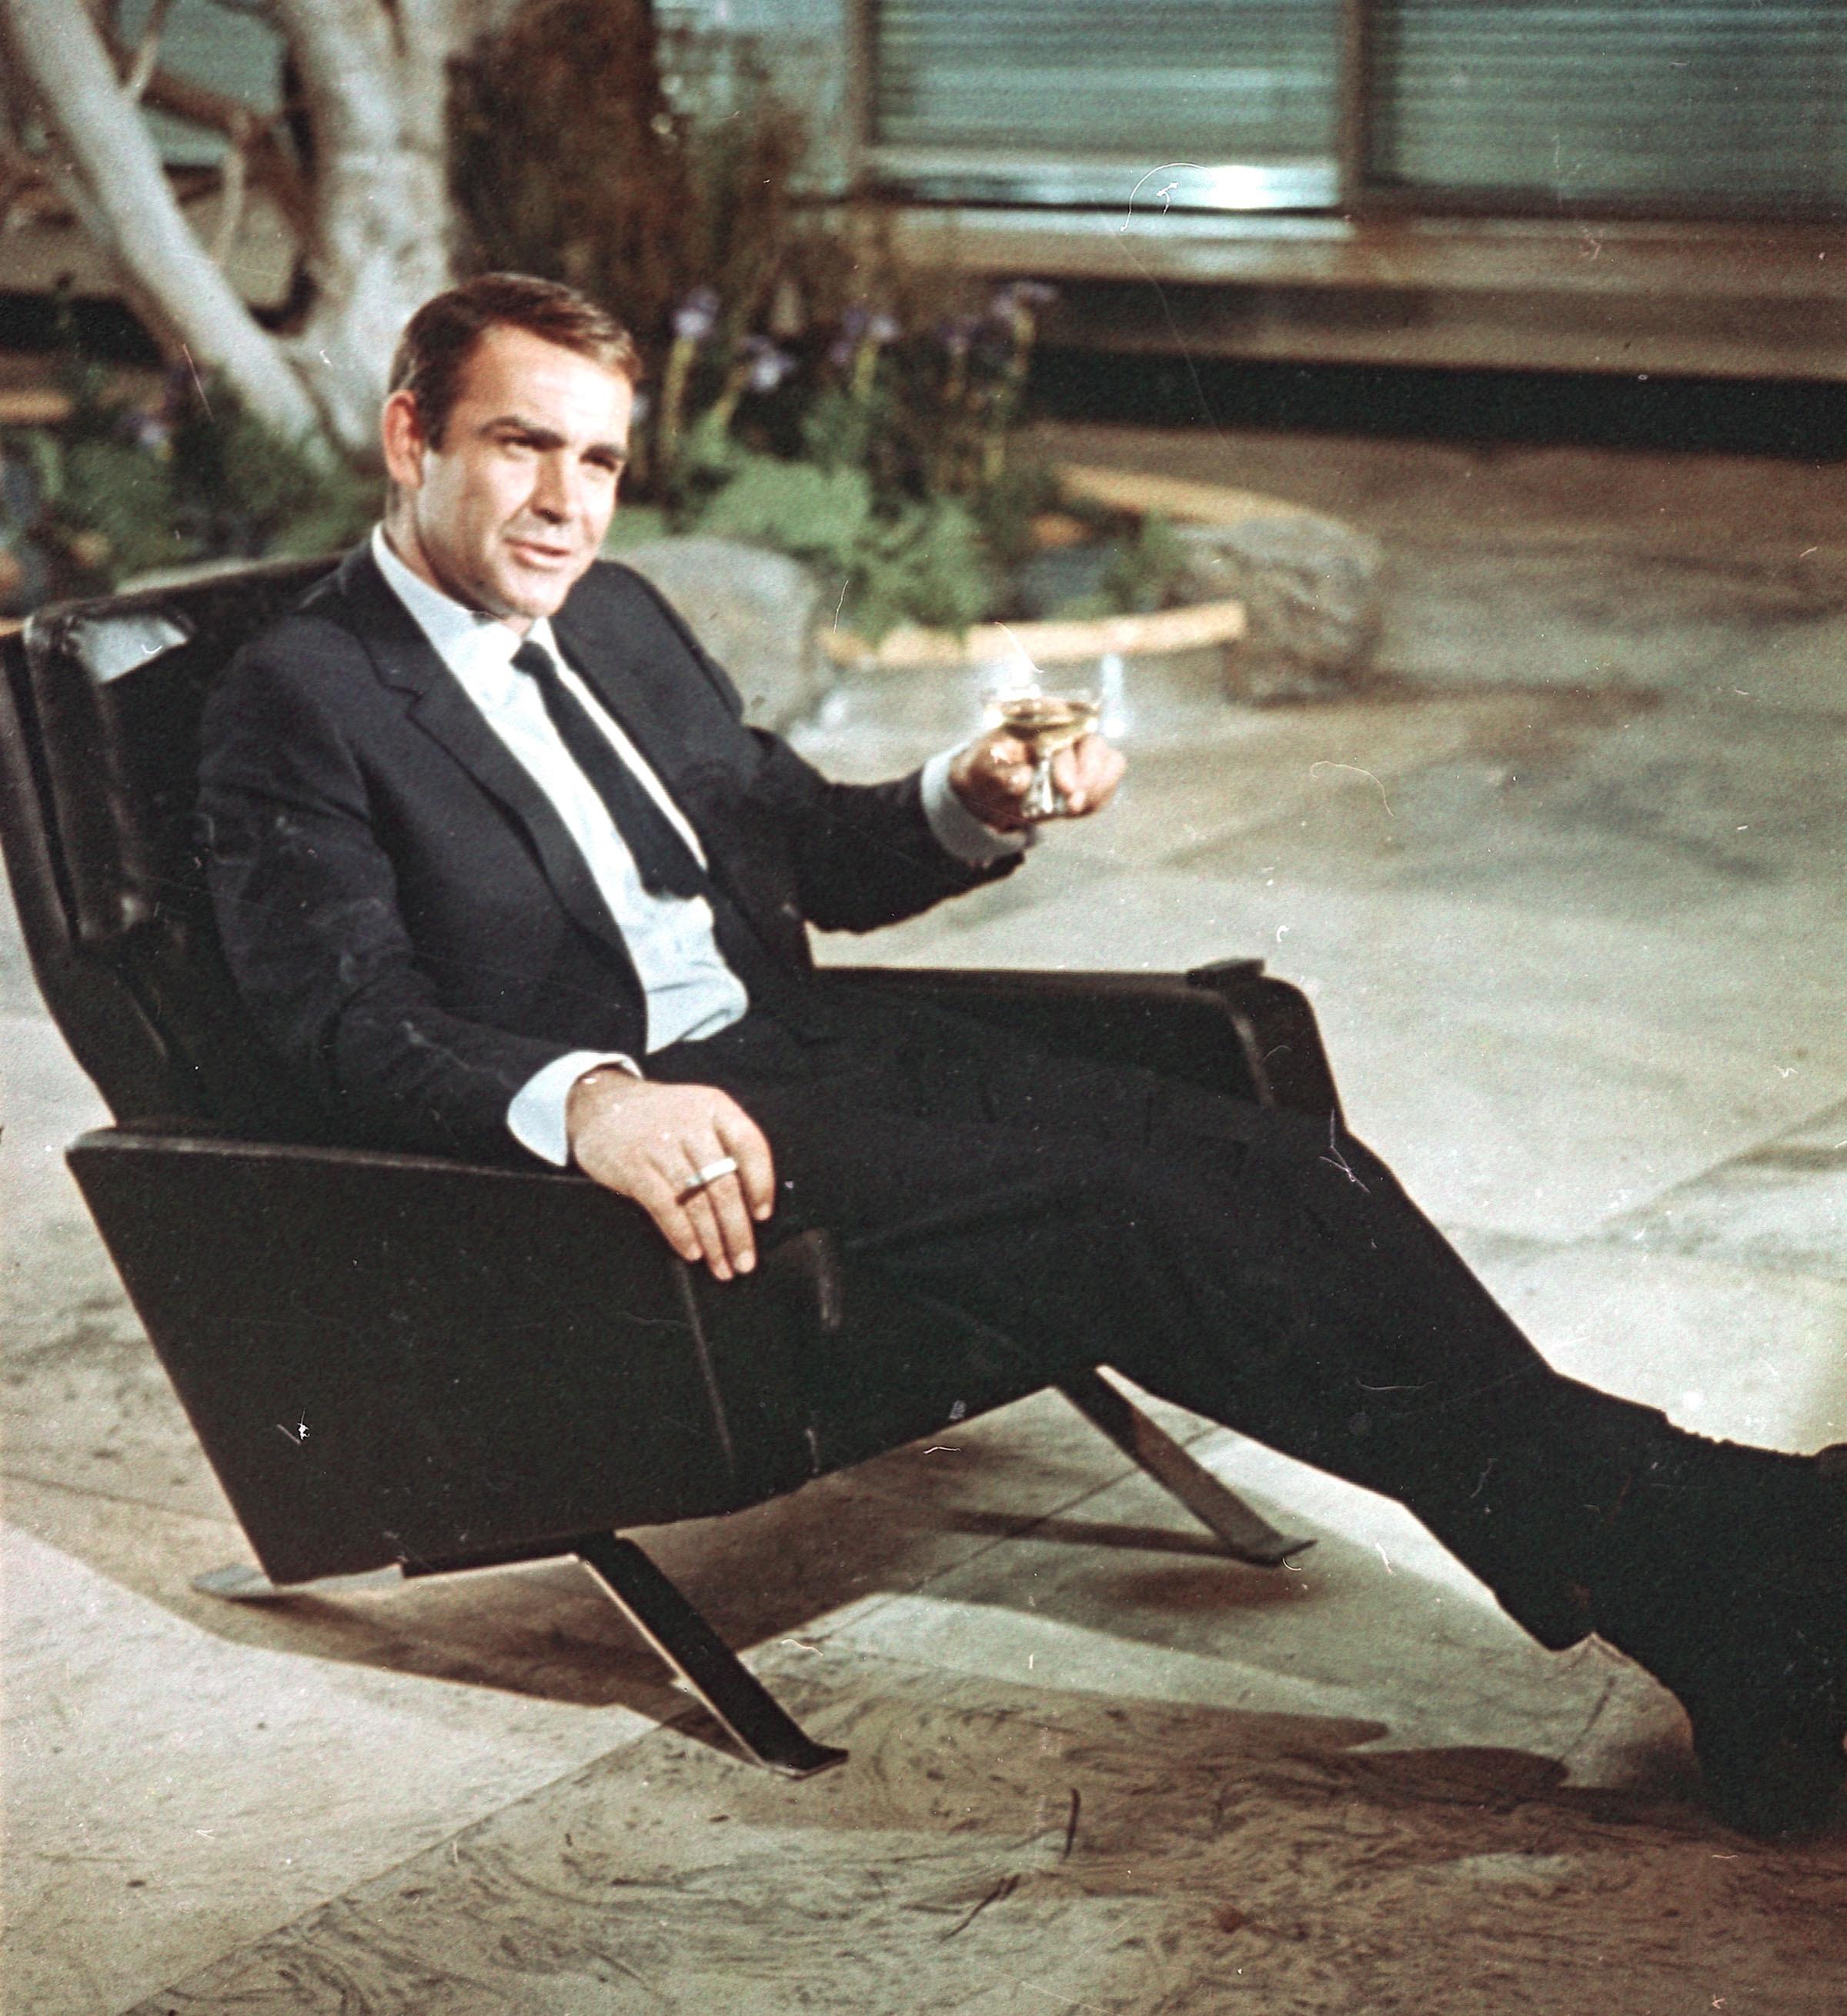 DEG I HELGEN?: Forfatteren Ian Fleming fant på cocktailen «Vesper» da han skrev den første James Bond-boken, «Casino Royale». Den ble bokens femme fatale. Nå er den en cocktail-klassiker. Oppskrift ned i saken.